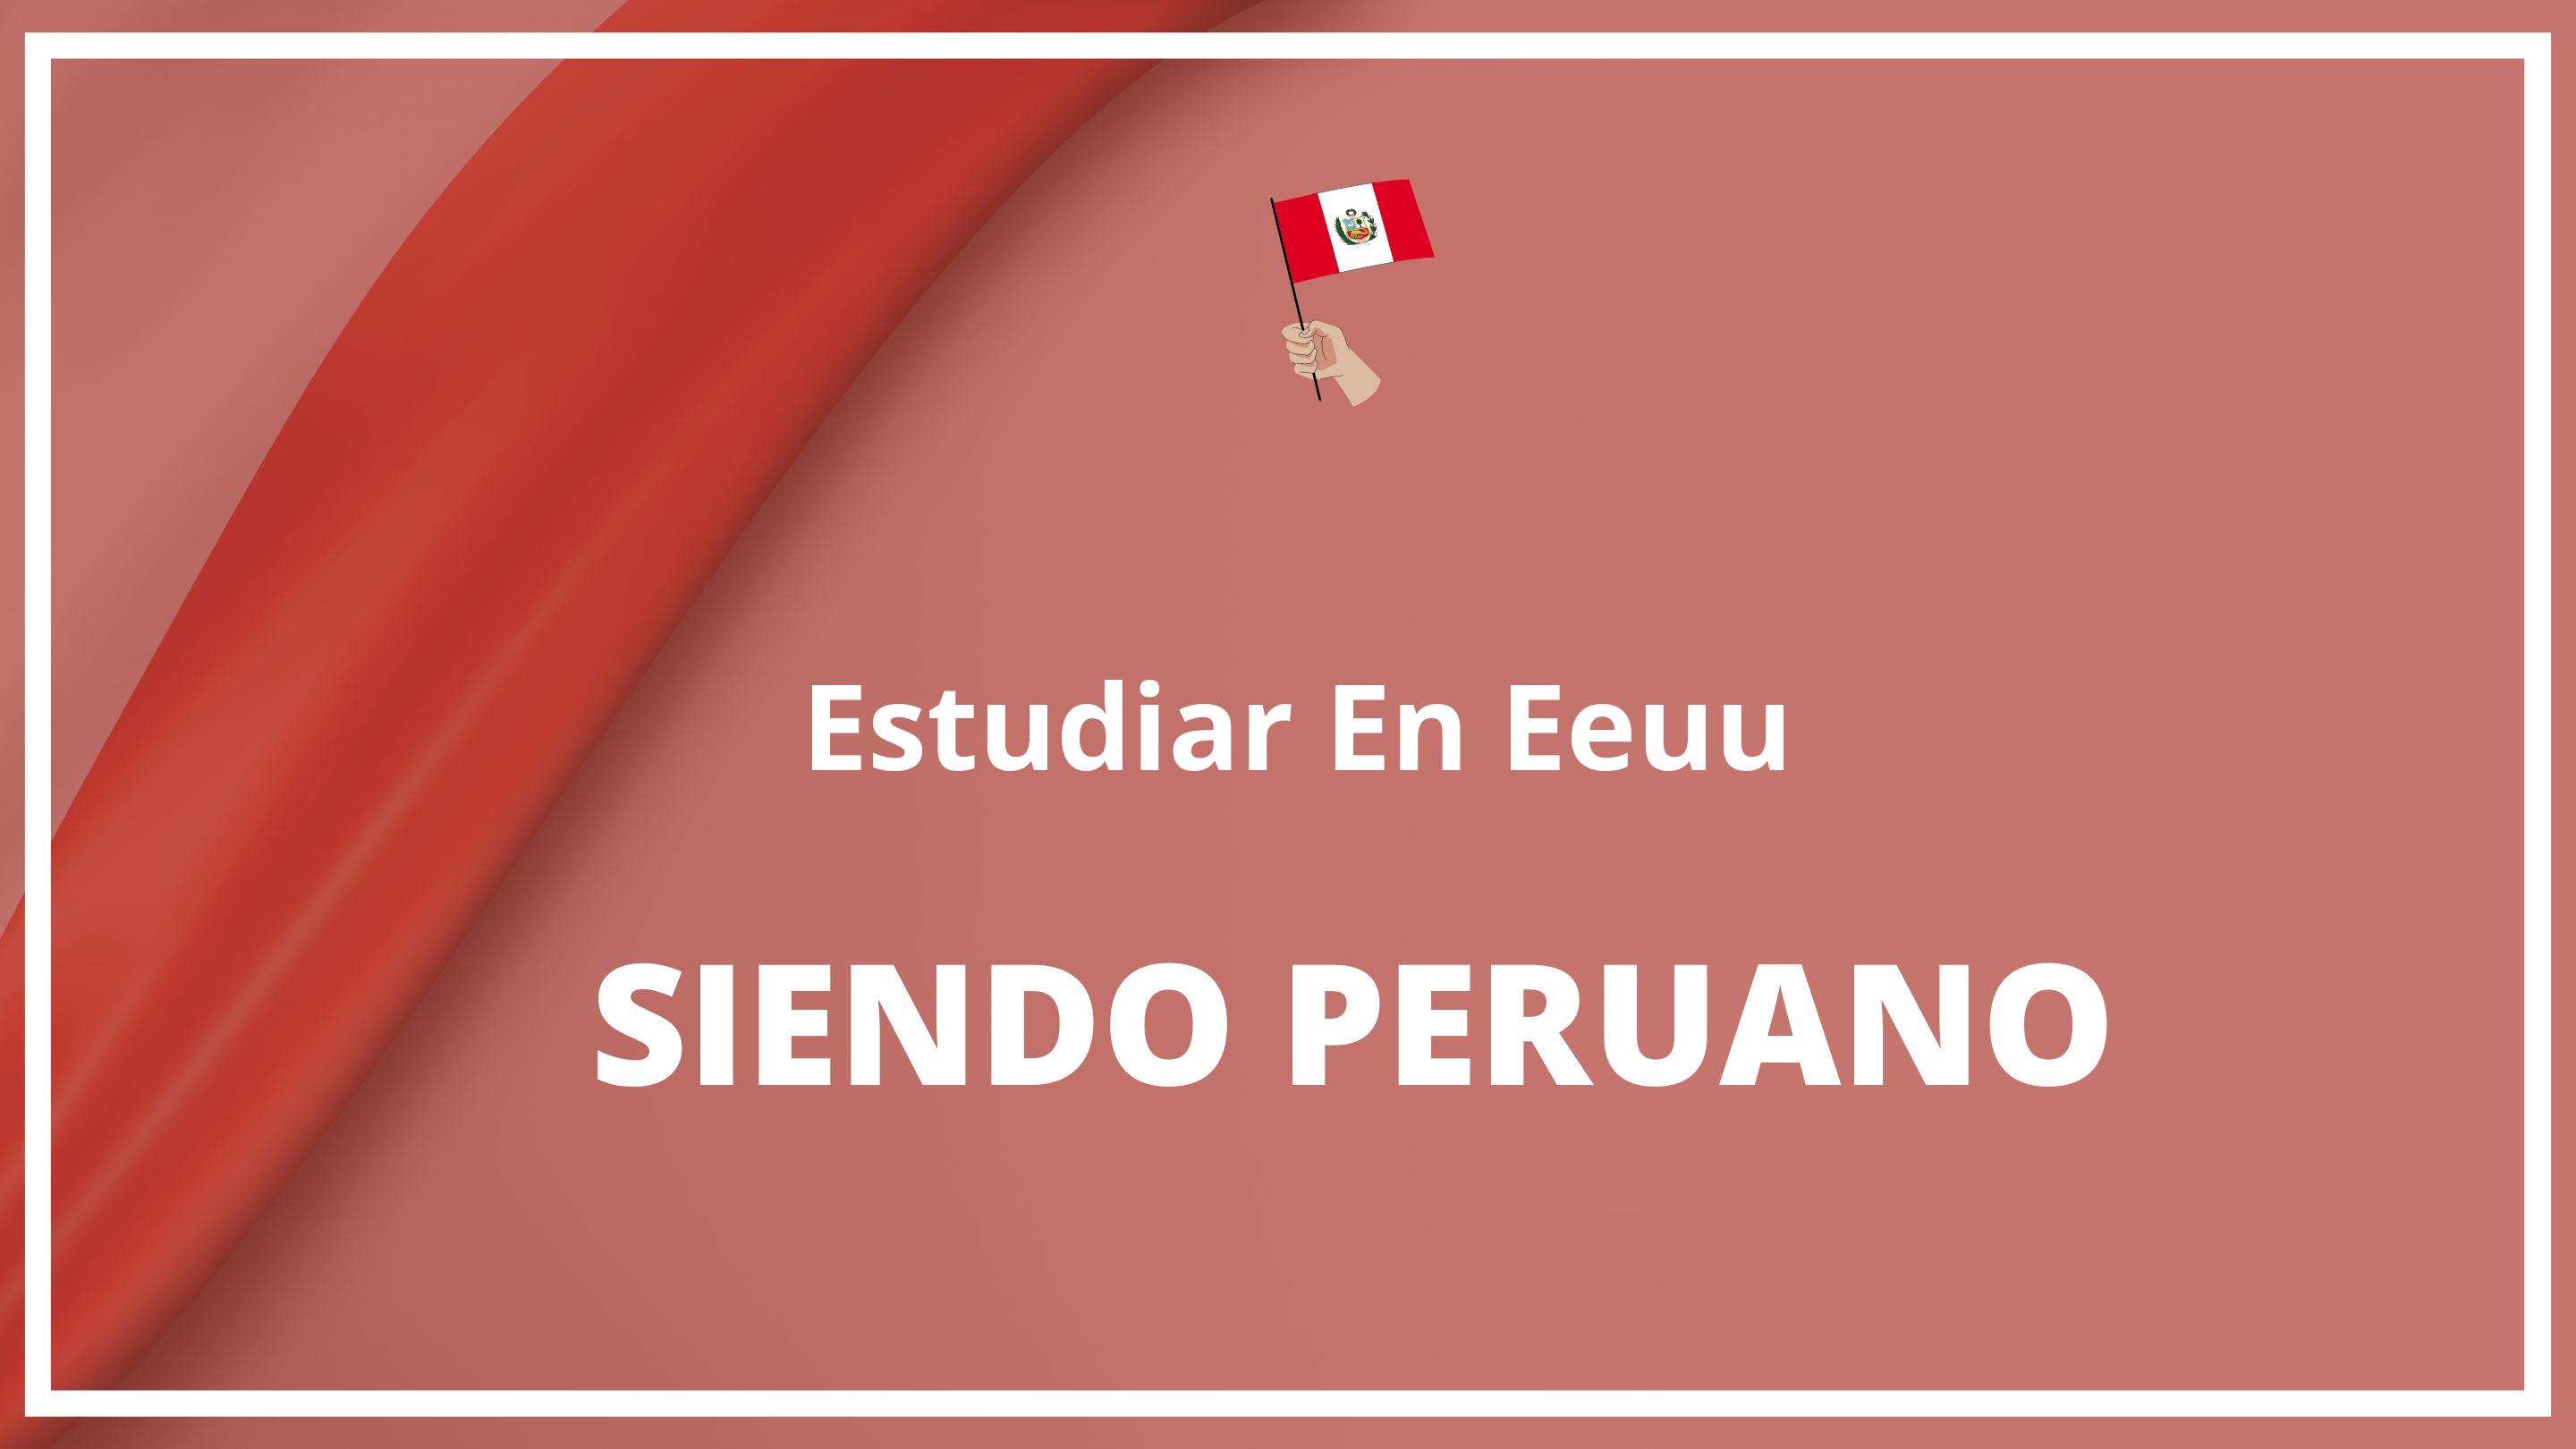 Como estudiar en eeuu siendo peruano